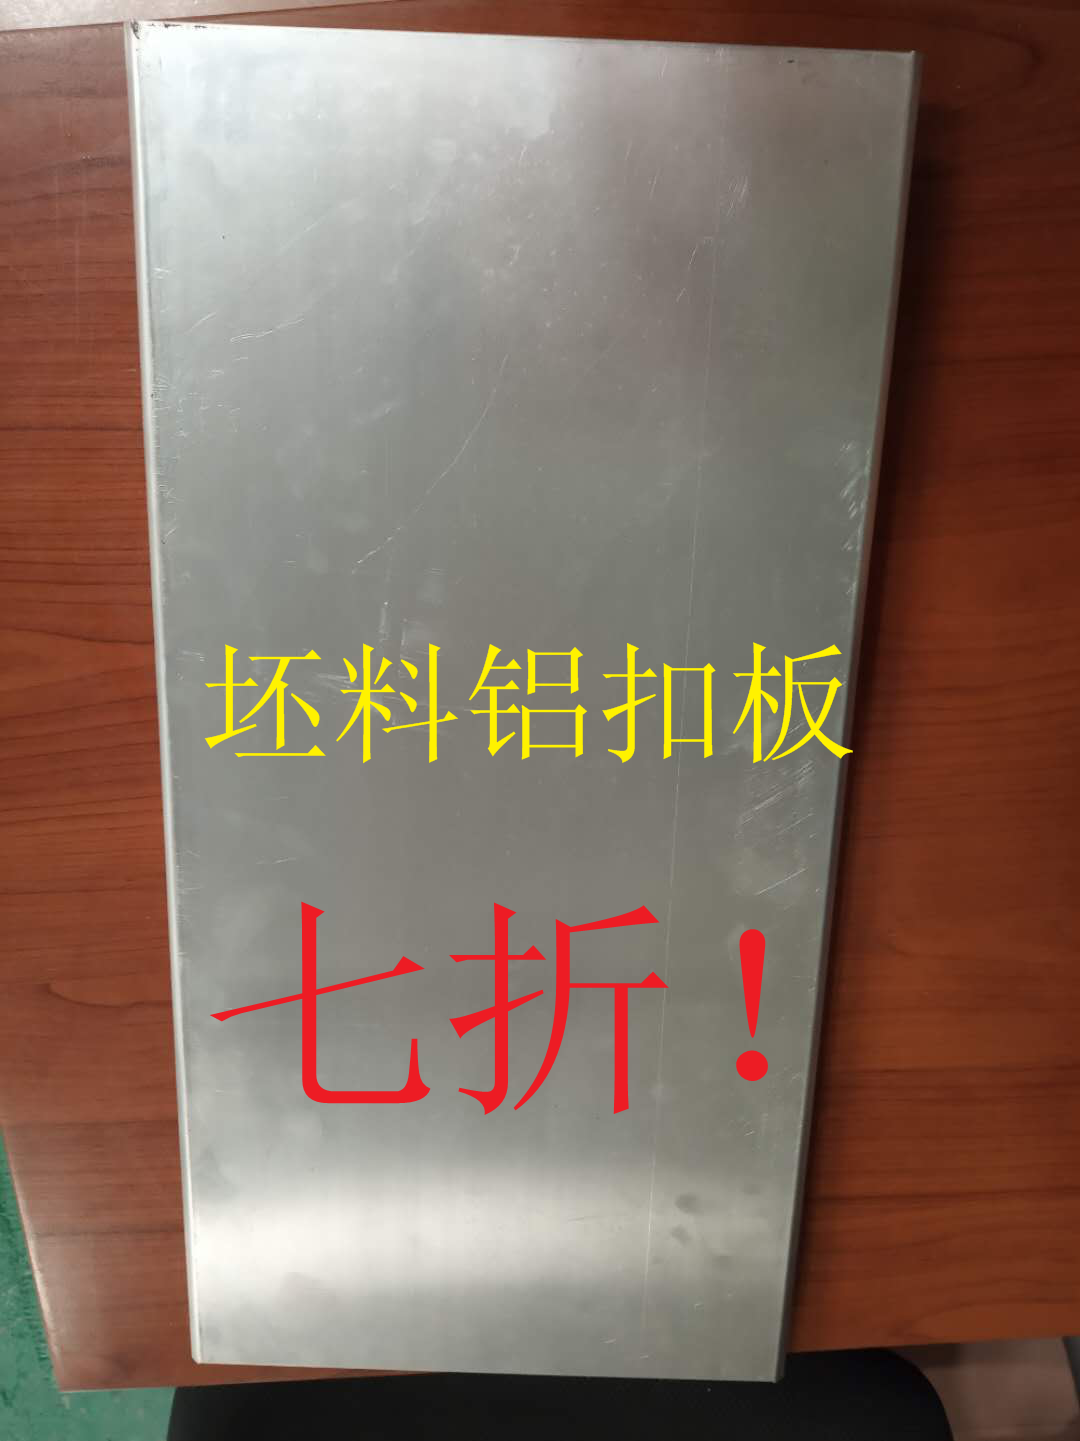 广州铝条扣生产厂家 凯诗迪公司 加油站吊顶天花装饰